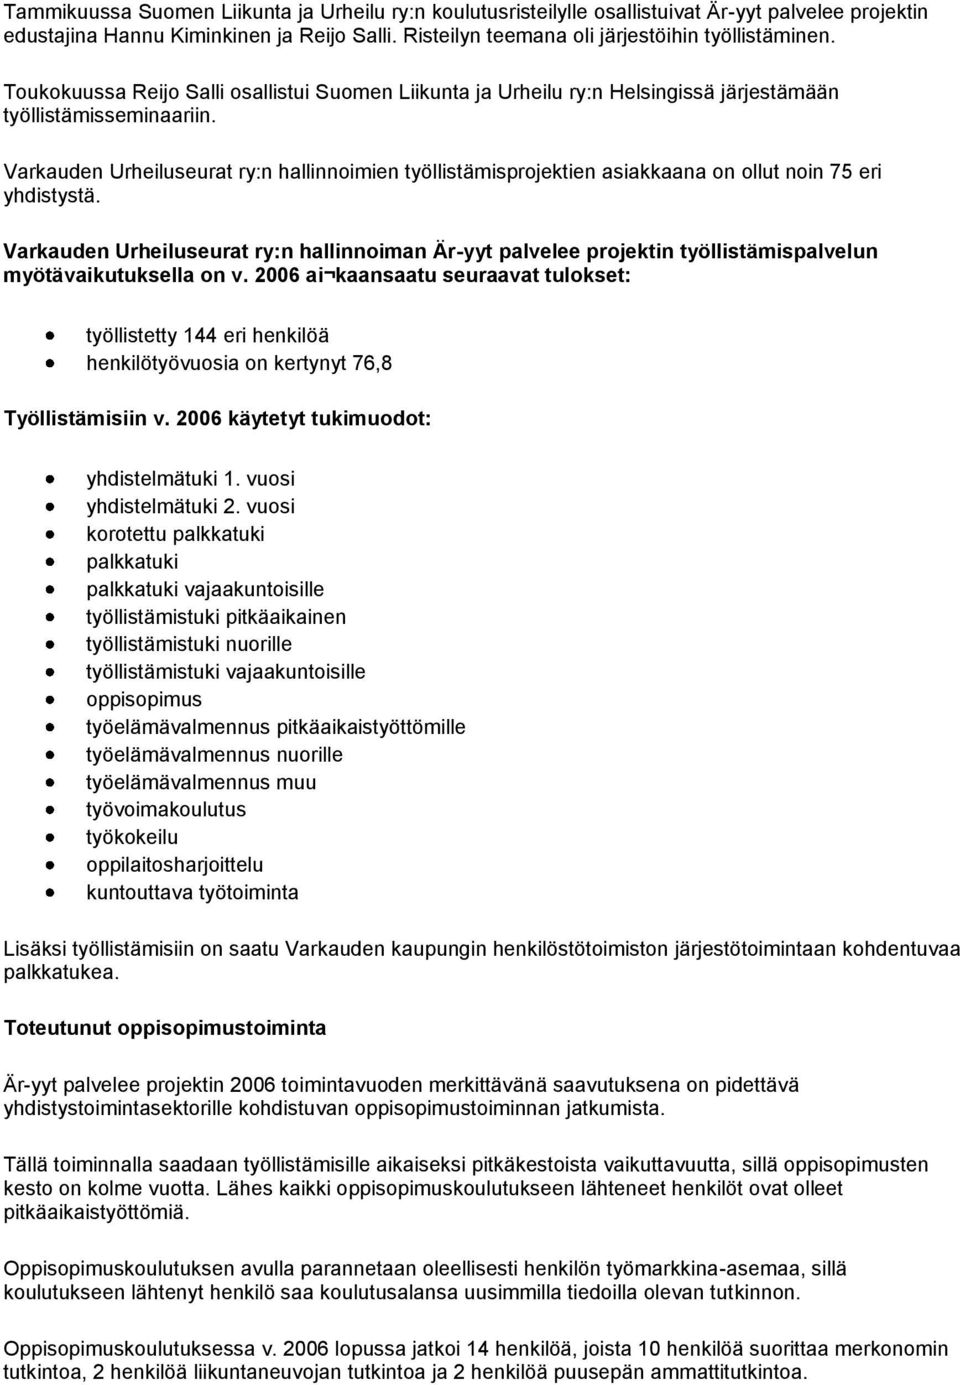 Varkauden Urheiluseurat ry:n hallinnoimien työllistämisprojektien asiakkaana on ollut noin 75 eri yhdistystä.